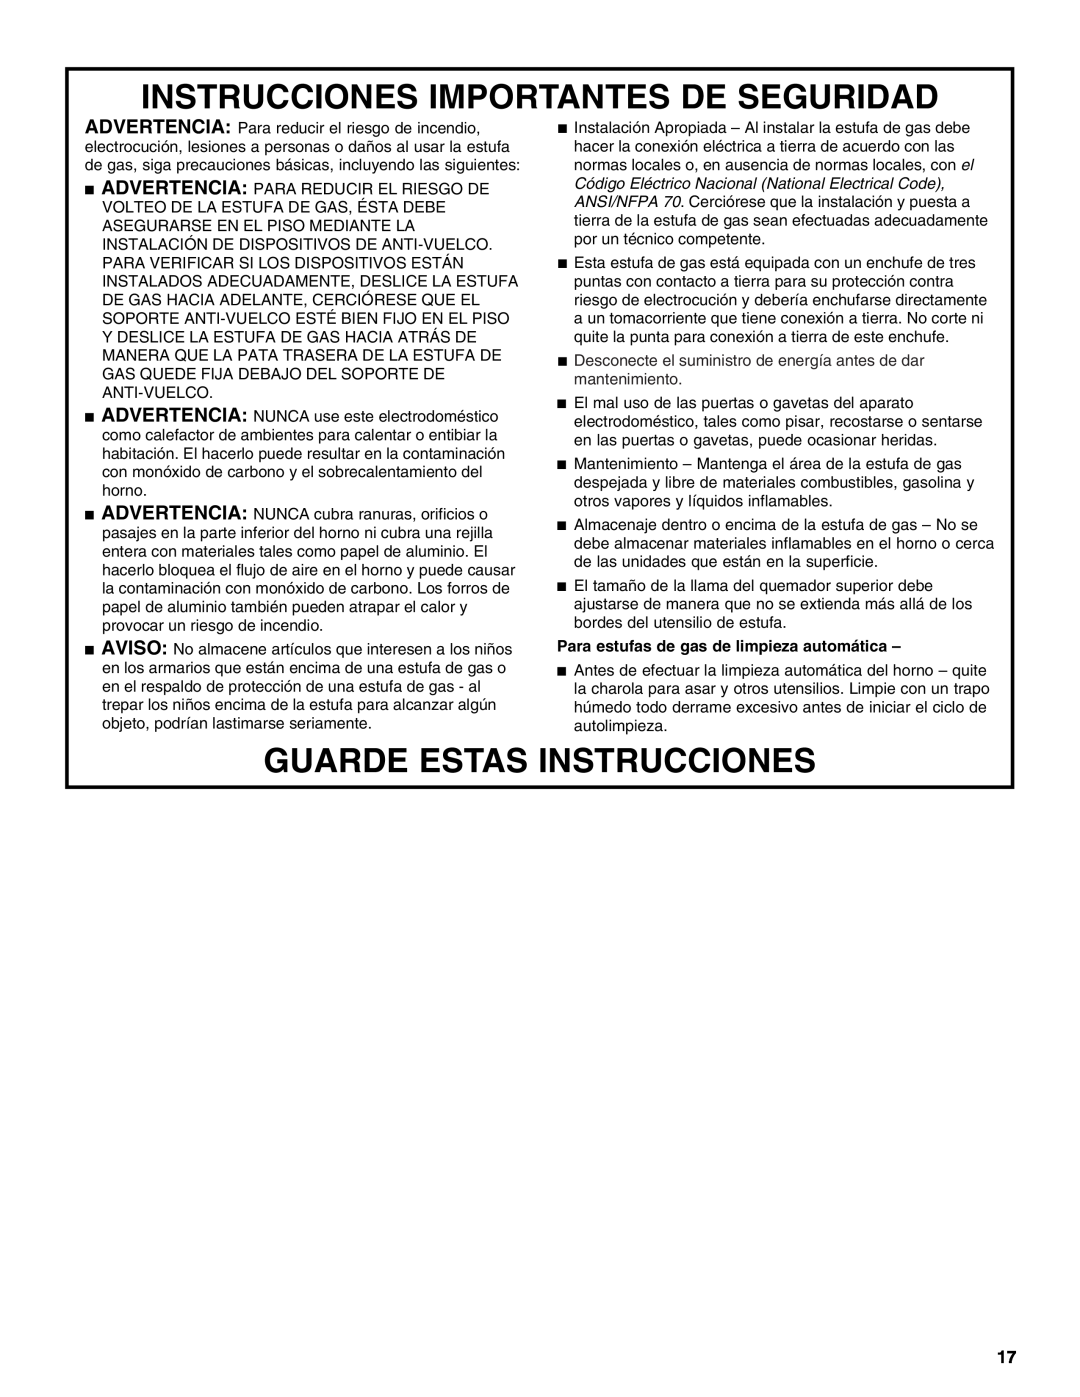 Estate W10173325A manual Instrucciones Importantes De Seguridad, Guarde Estas Instrucciones 